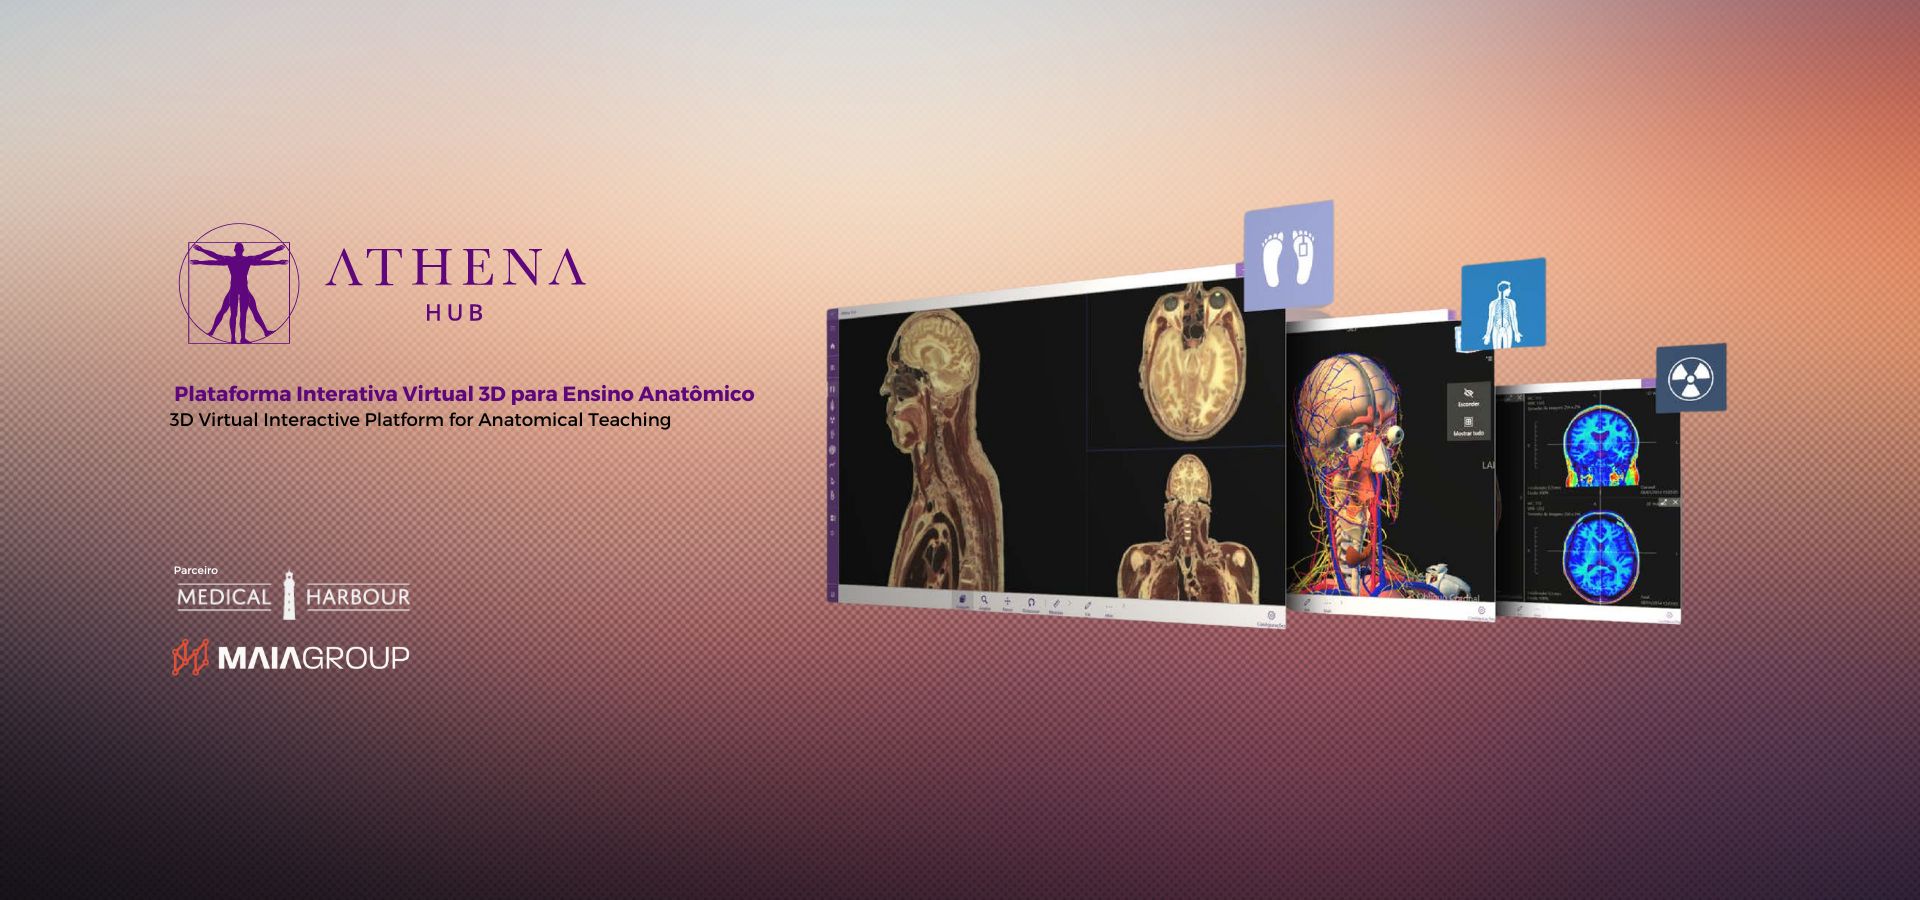 Plataforma de ensino anatomico